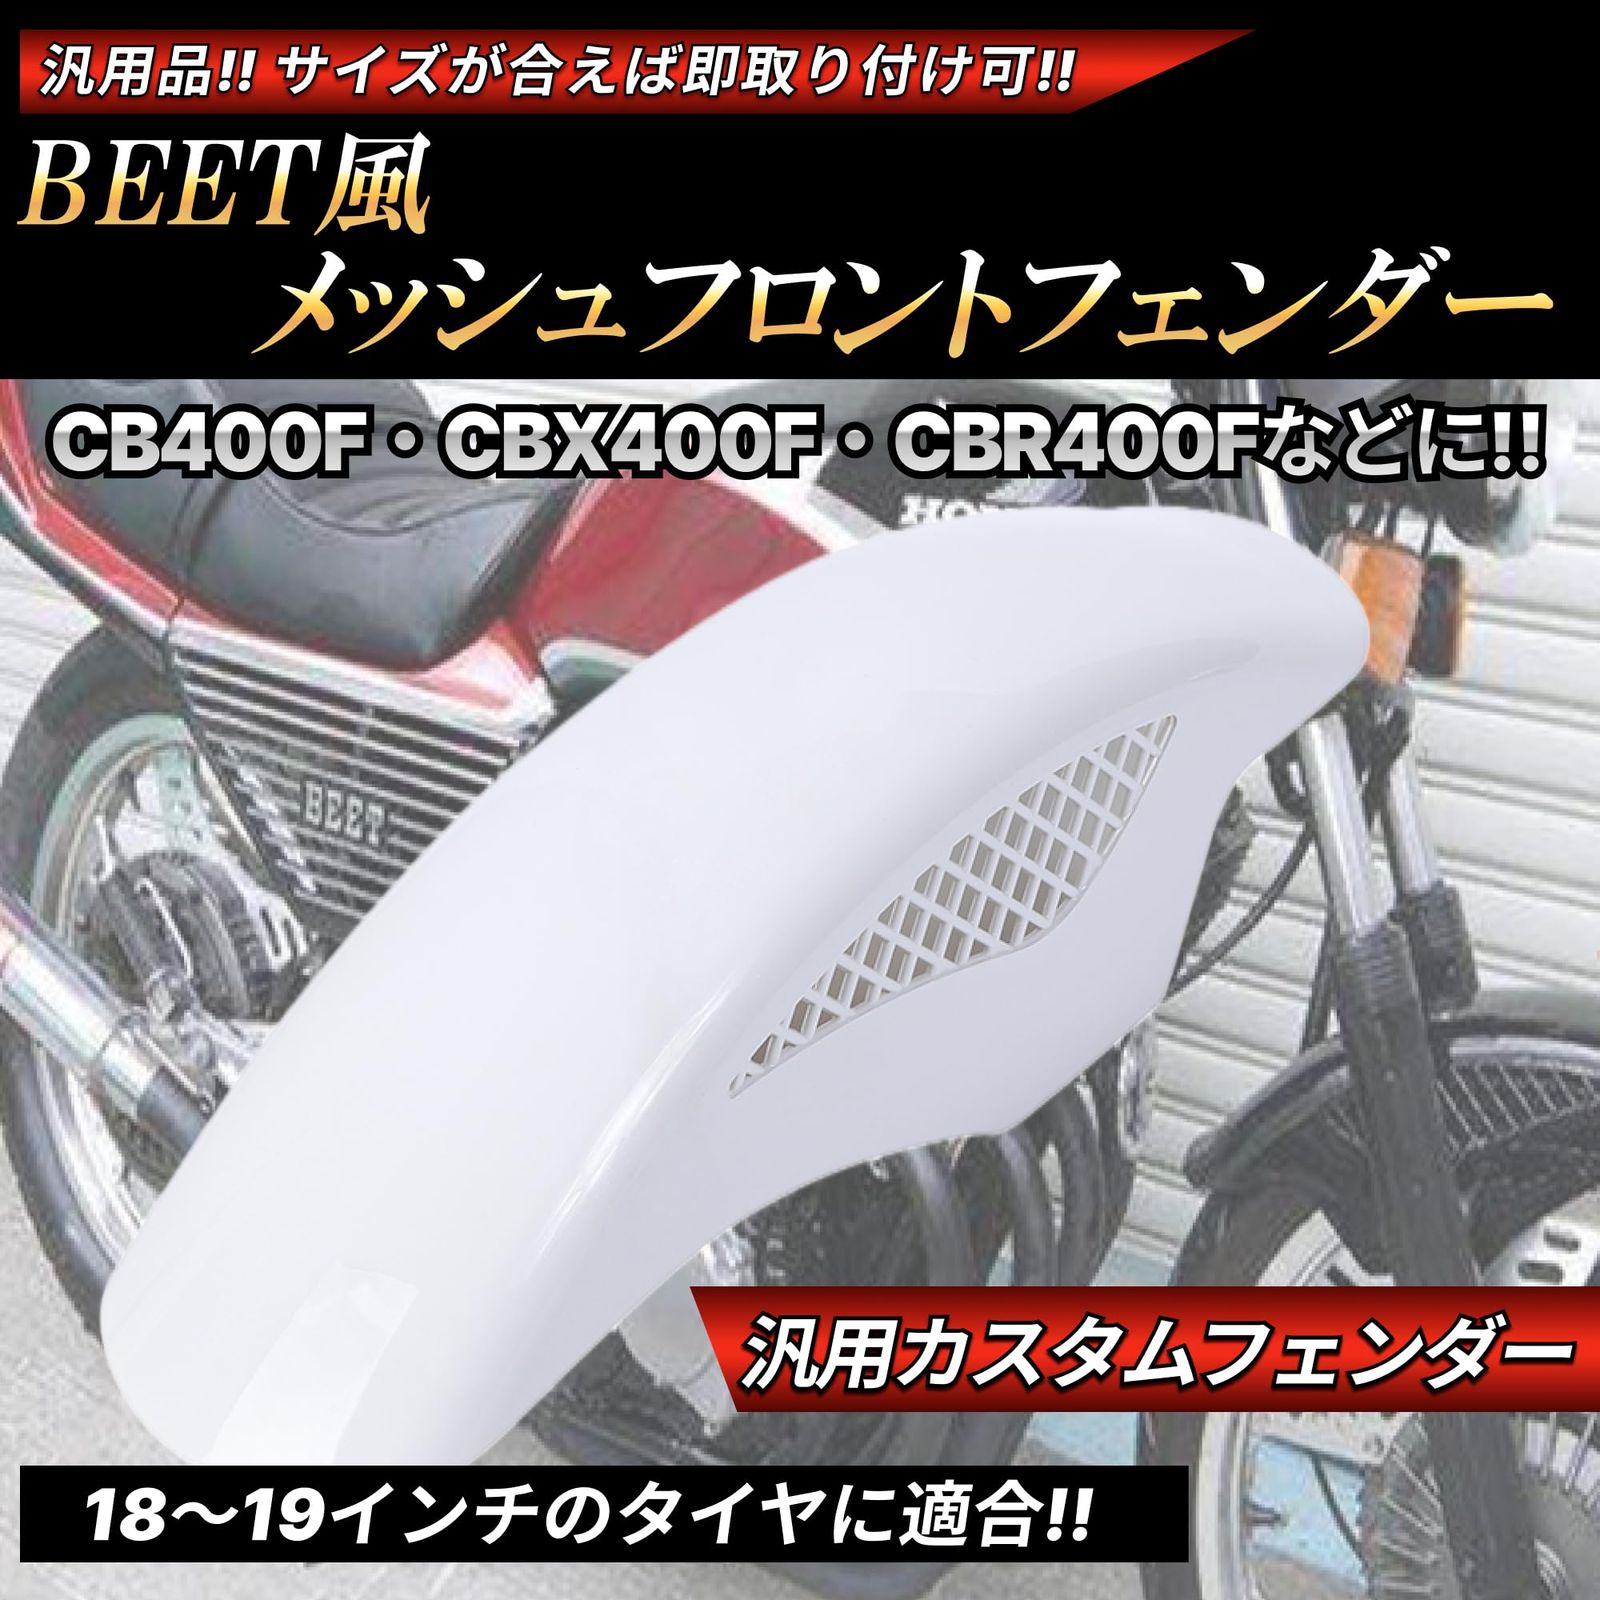 【特価超特価】CBX400F CBX パーツ